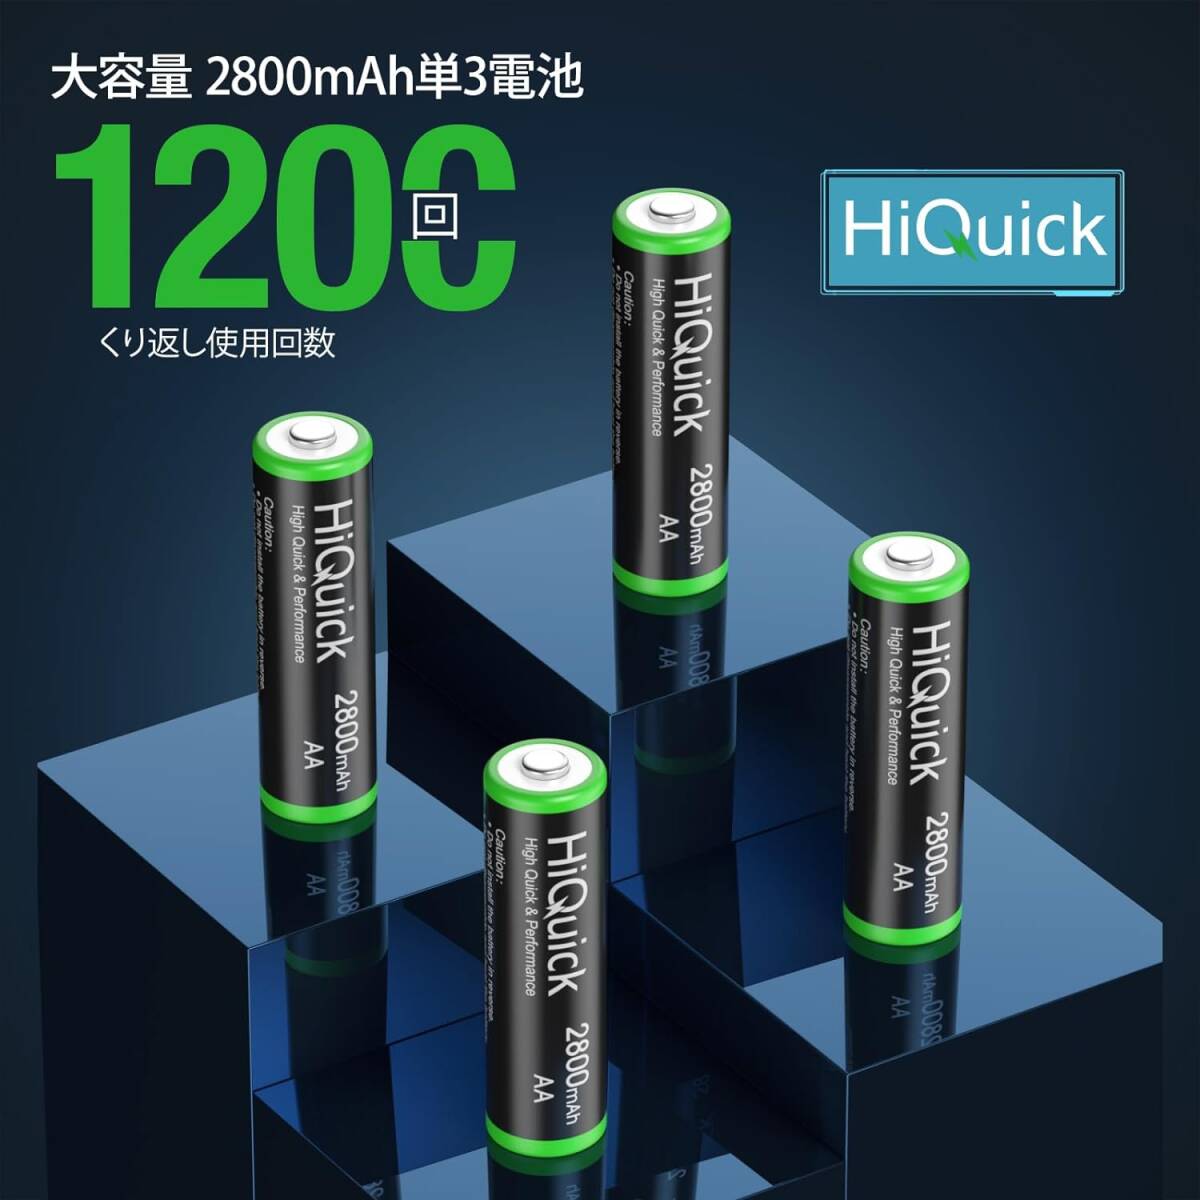  single 3 shape rechargeable battery 4ps.@HiQuick rechargeable battery single 3 lantern for AA battery rechargeable Nickel-Metal Hydride battery four battery single 3 high capacity 2800mAh